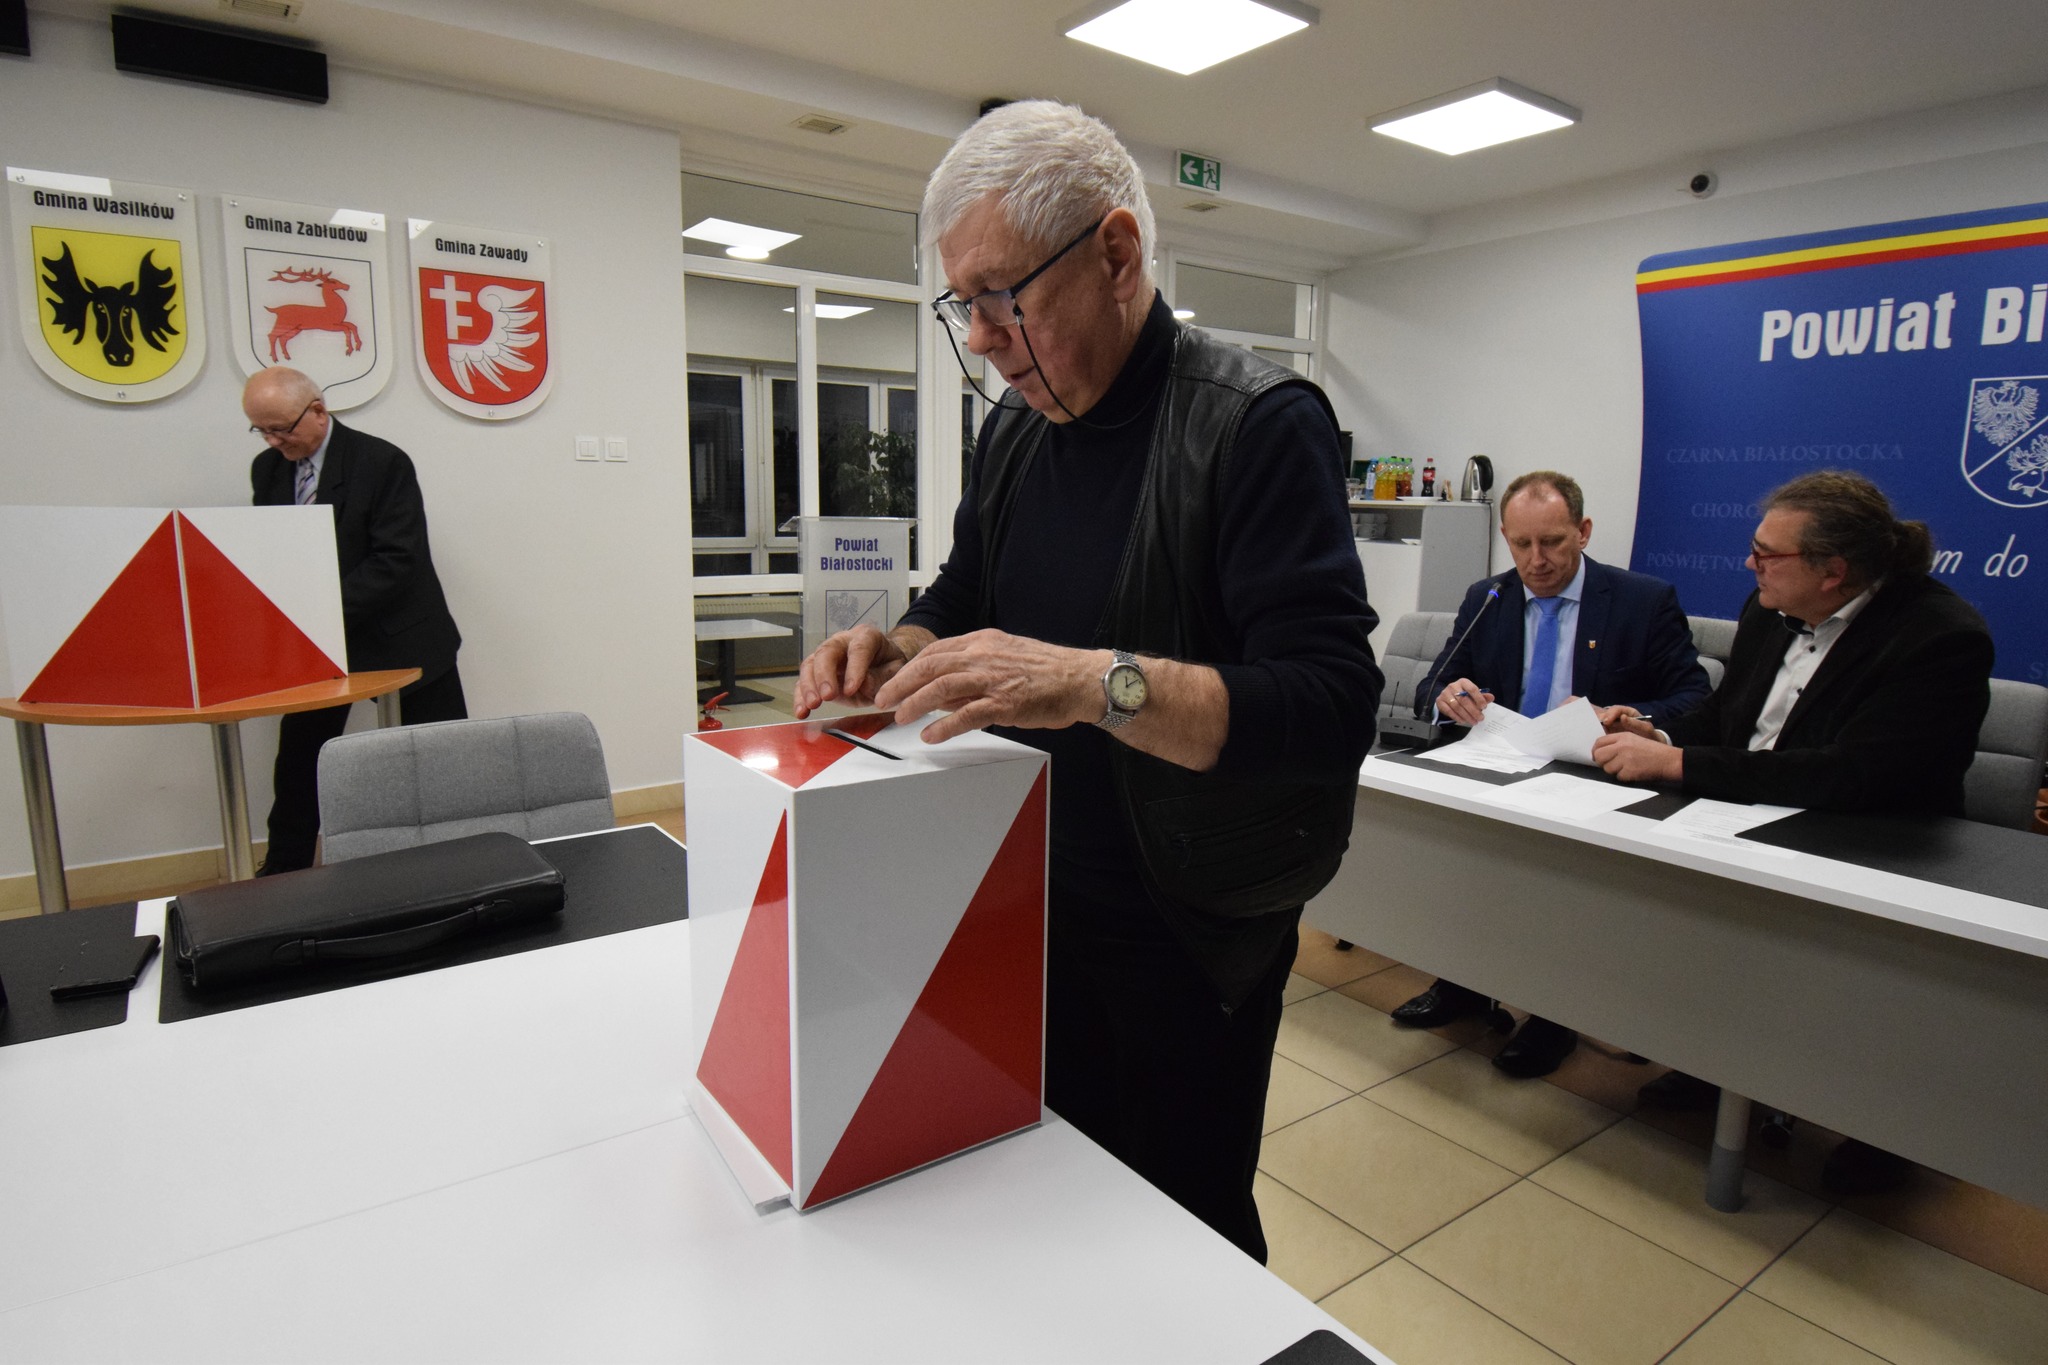 Rada Powiatu Białostockiego - nadzwyczajna sesja - głosowanie przy wyborze nowego członka zarządu
